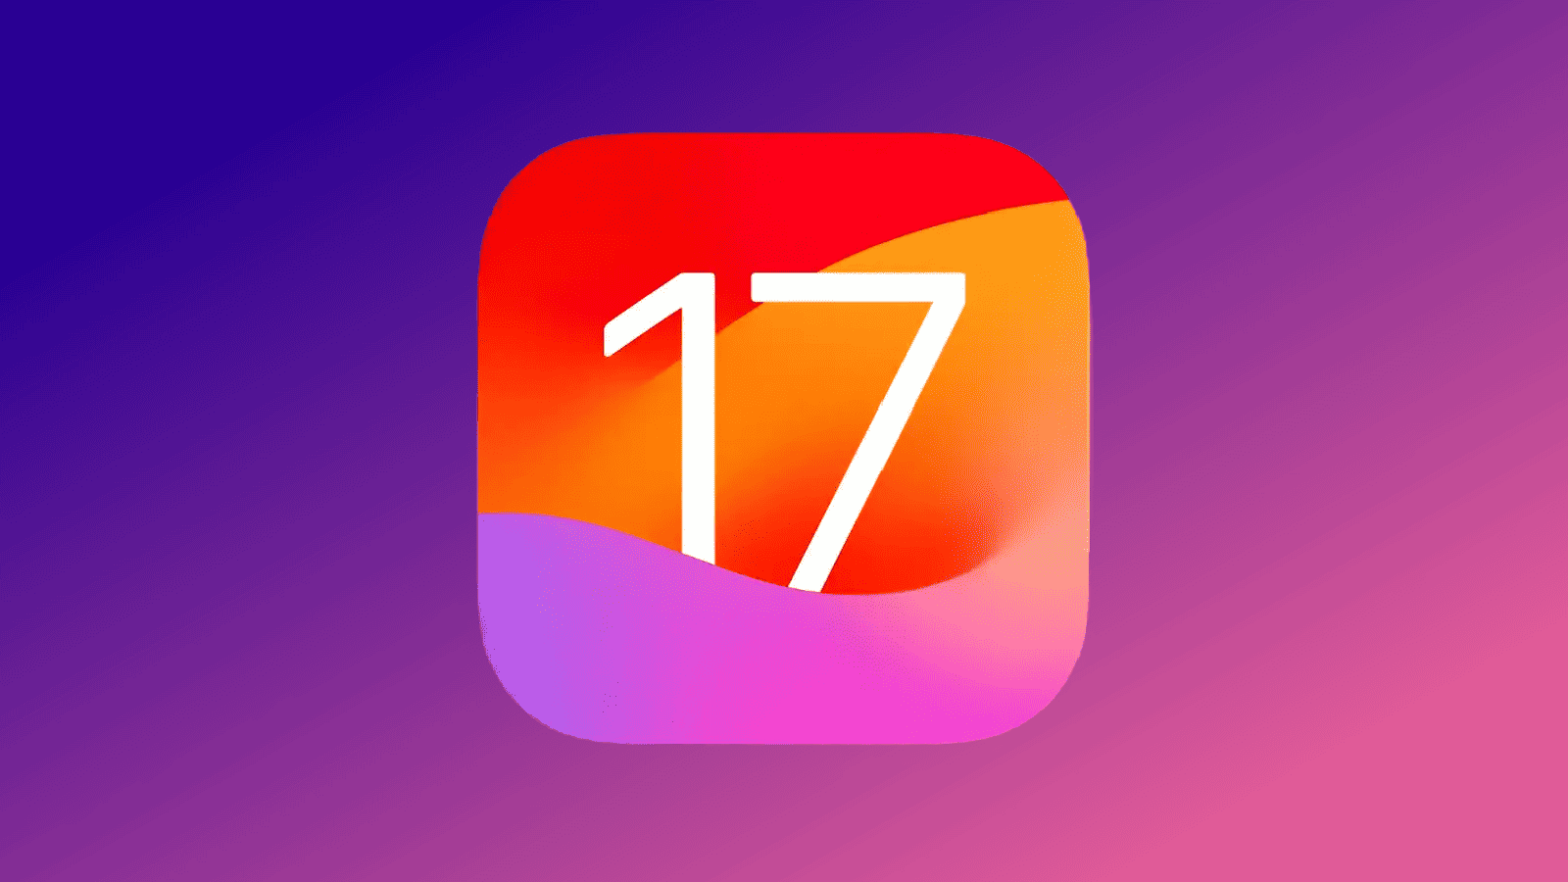 Apple Releases iOS 17 Public Beta 3